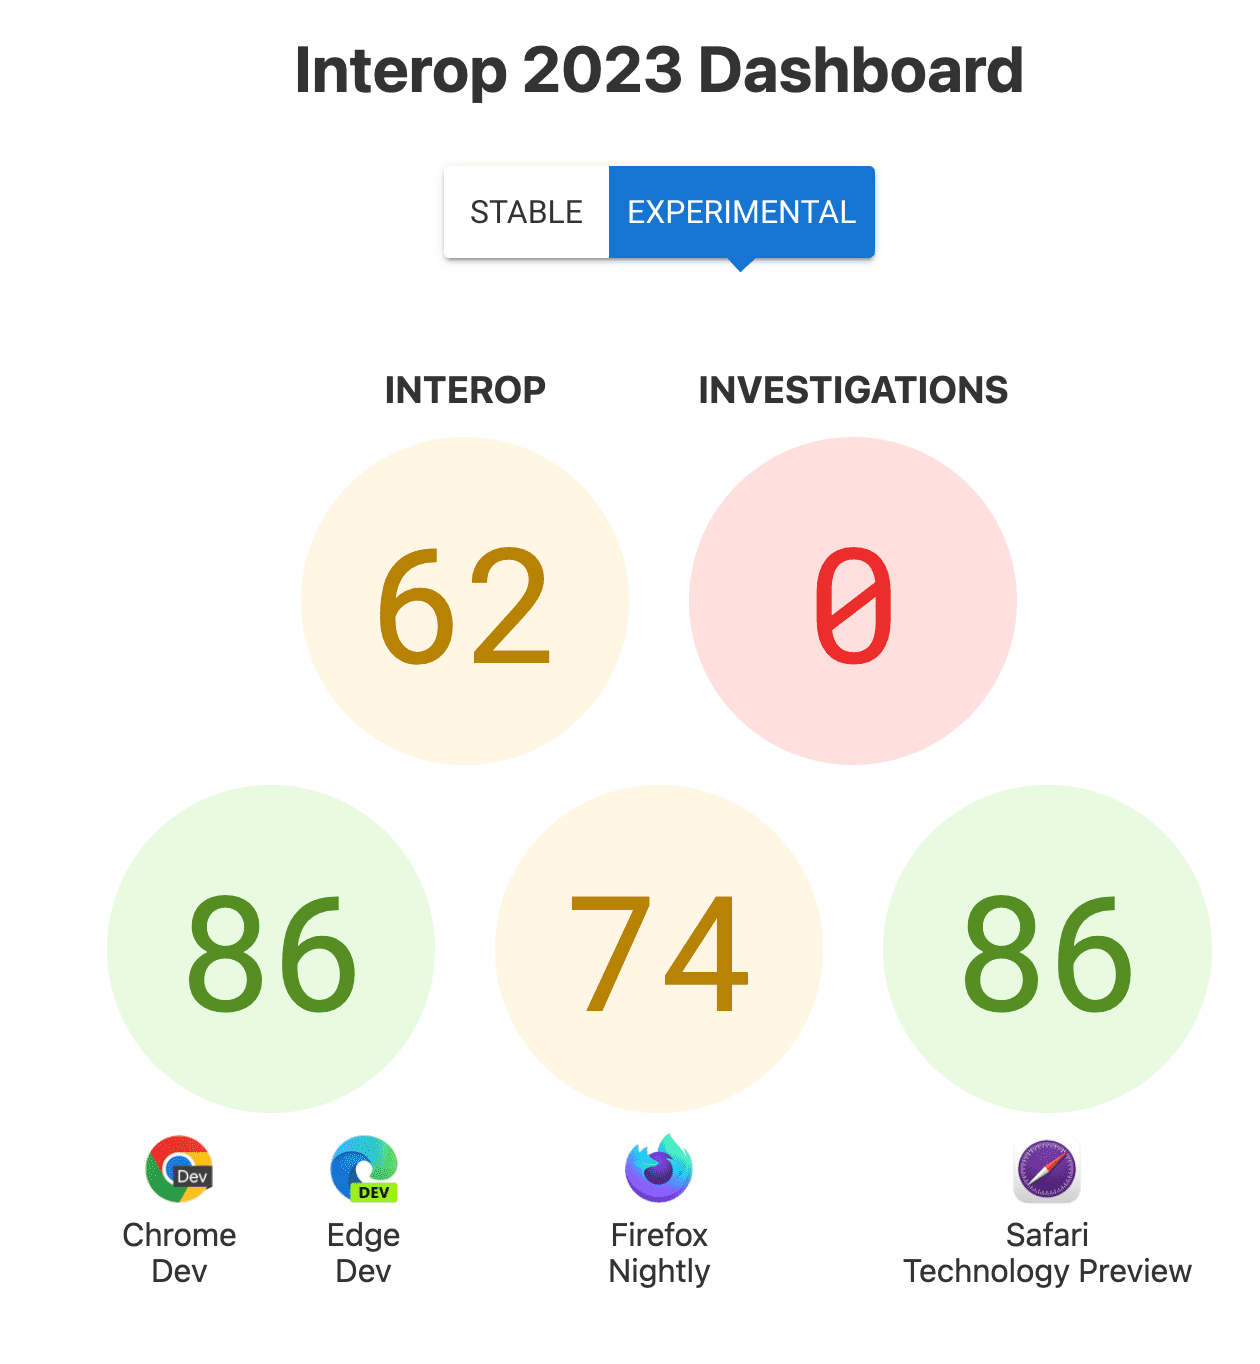 Score d&#39;interopérabilité global : 62, Investigations : 0, et scores par navigateur : 86 pour Chrome et Edge, 74 pour Firefox, 86 pour Safari Technology Preview.